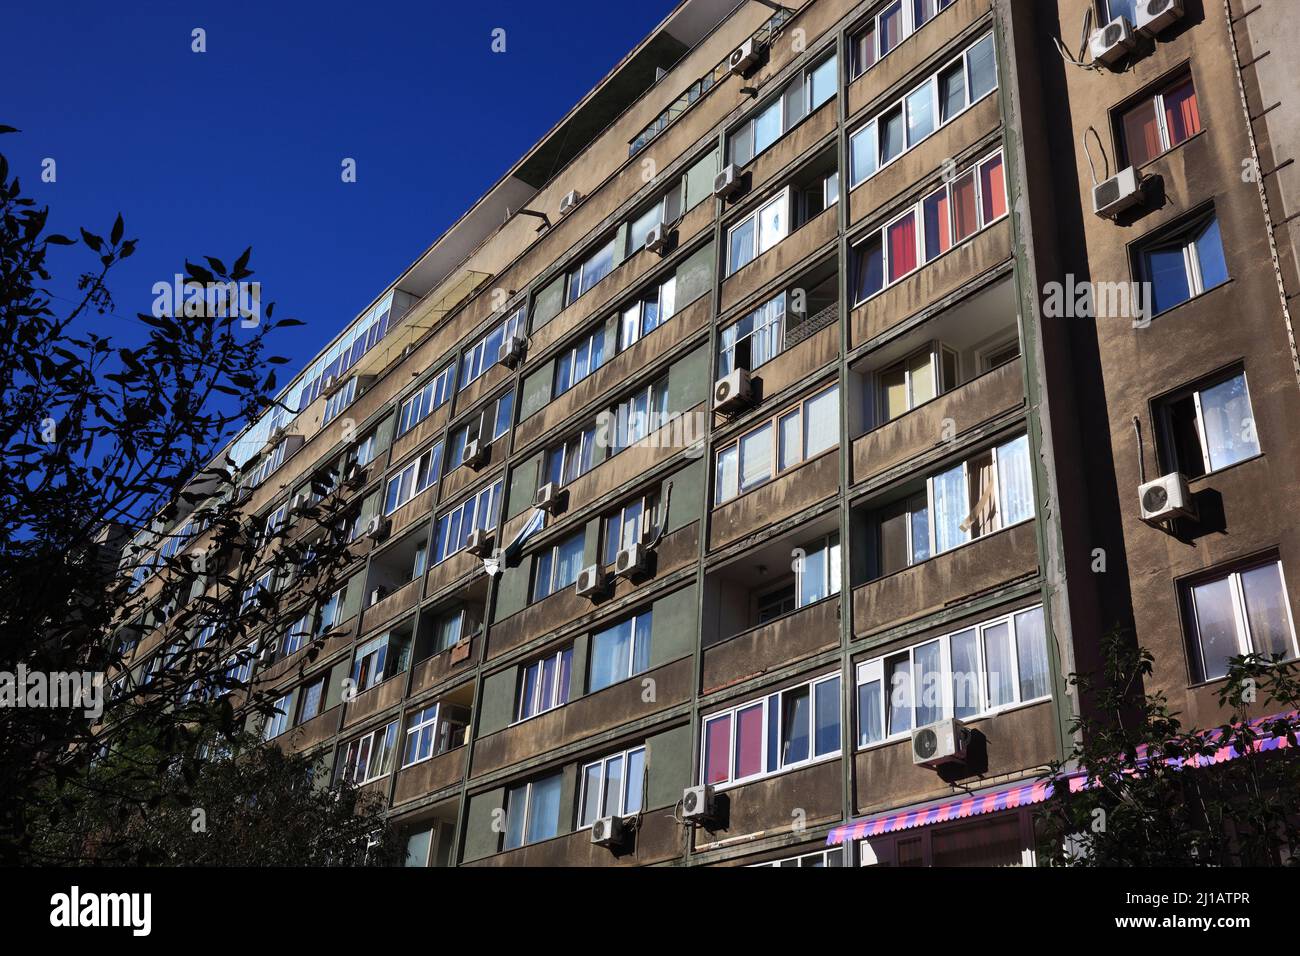 Wohnhaus im sozialistischen Plattenbaustil, Bukarest, Rumänien / socialiste préfabriqué immeuble résidentiel, Bucarest, Roumanie (Aufnahmedatum kan Banque D'Images